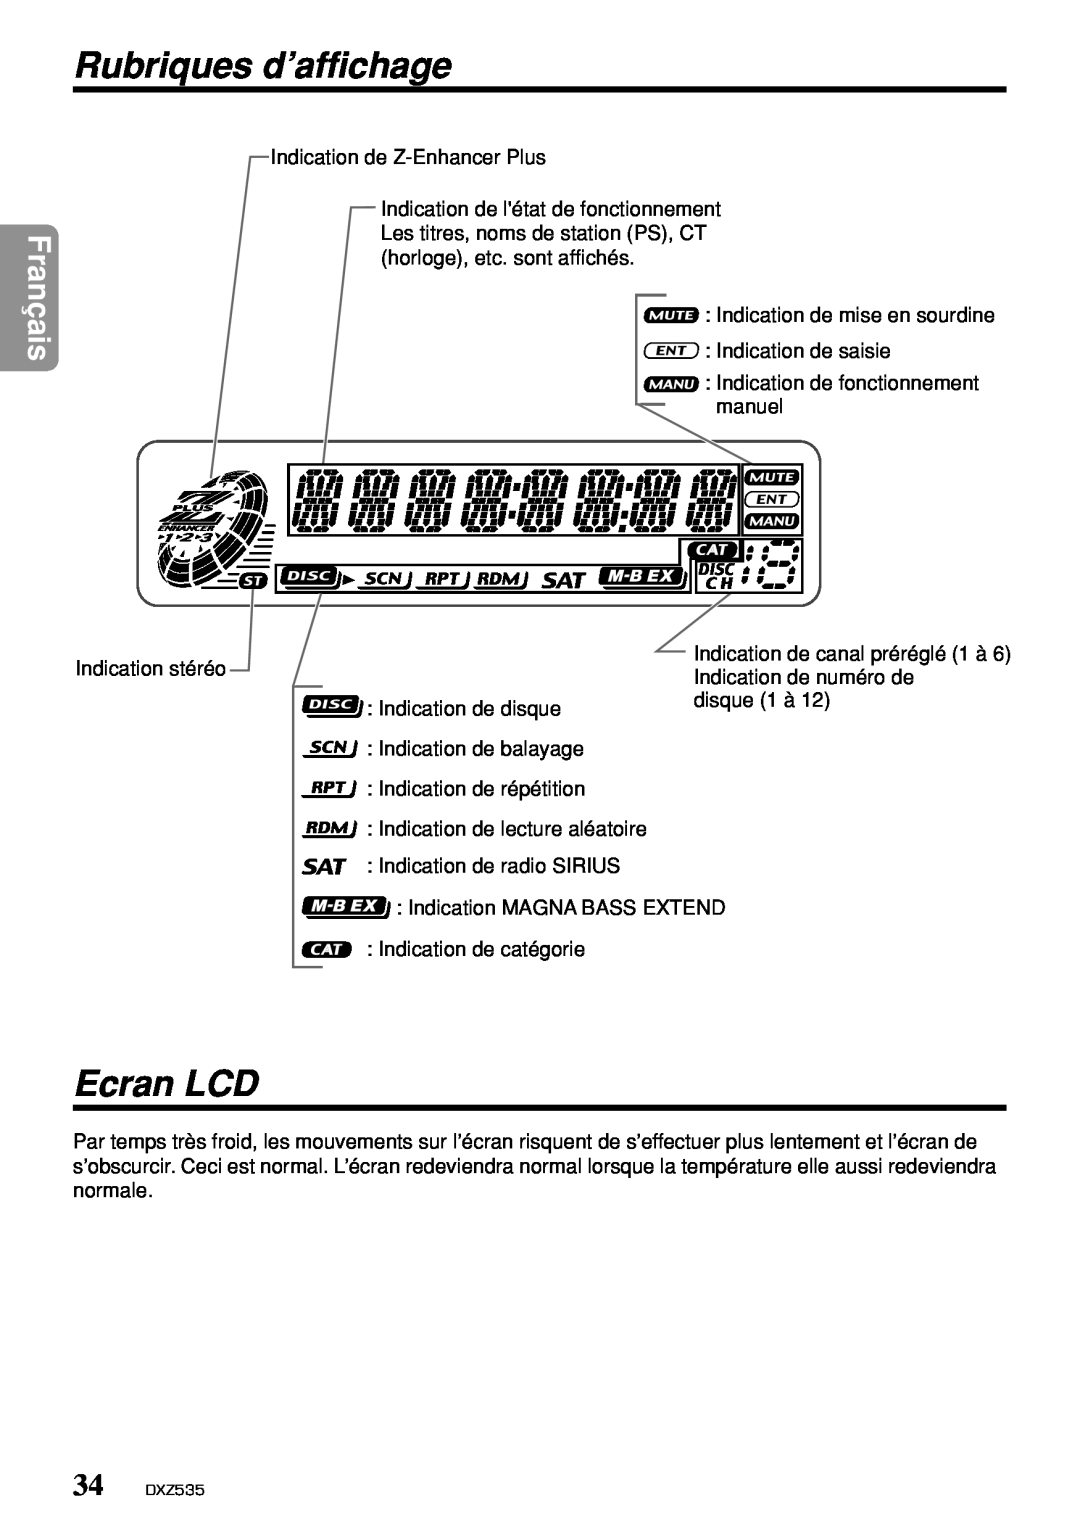 Clarion DXZ535 owner manual Rubriques d’affichage, Ecran LCD, Français 